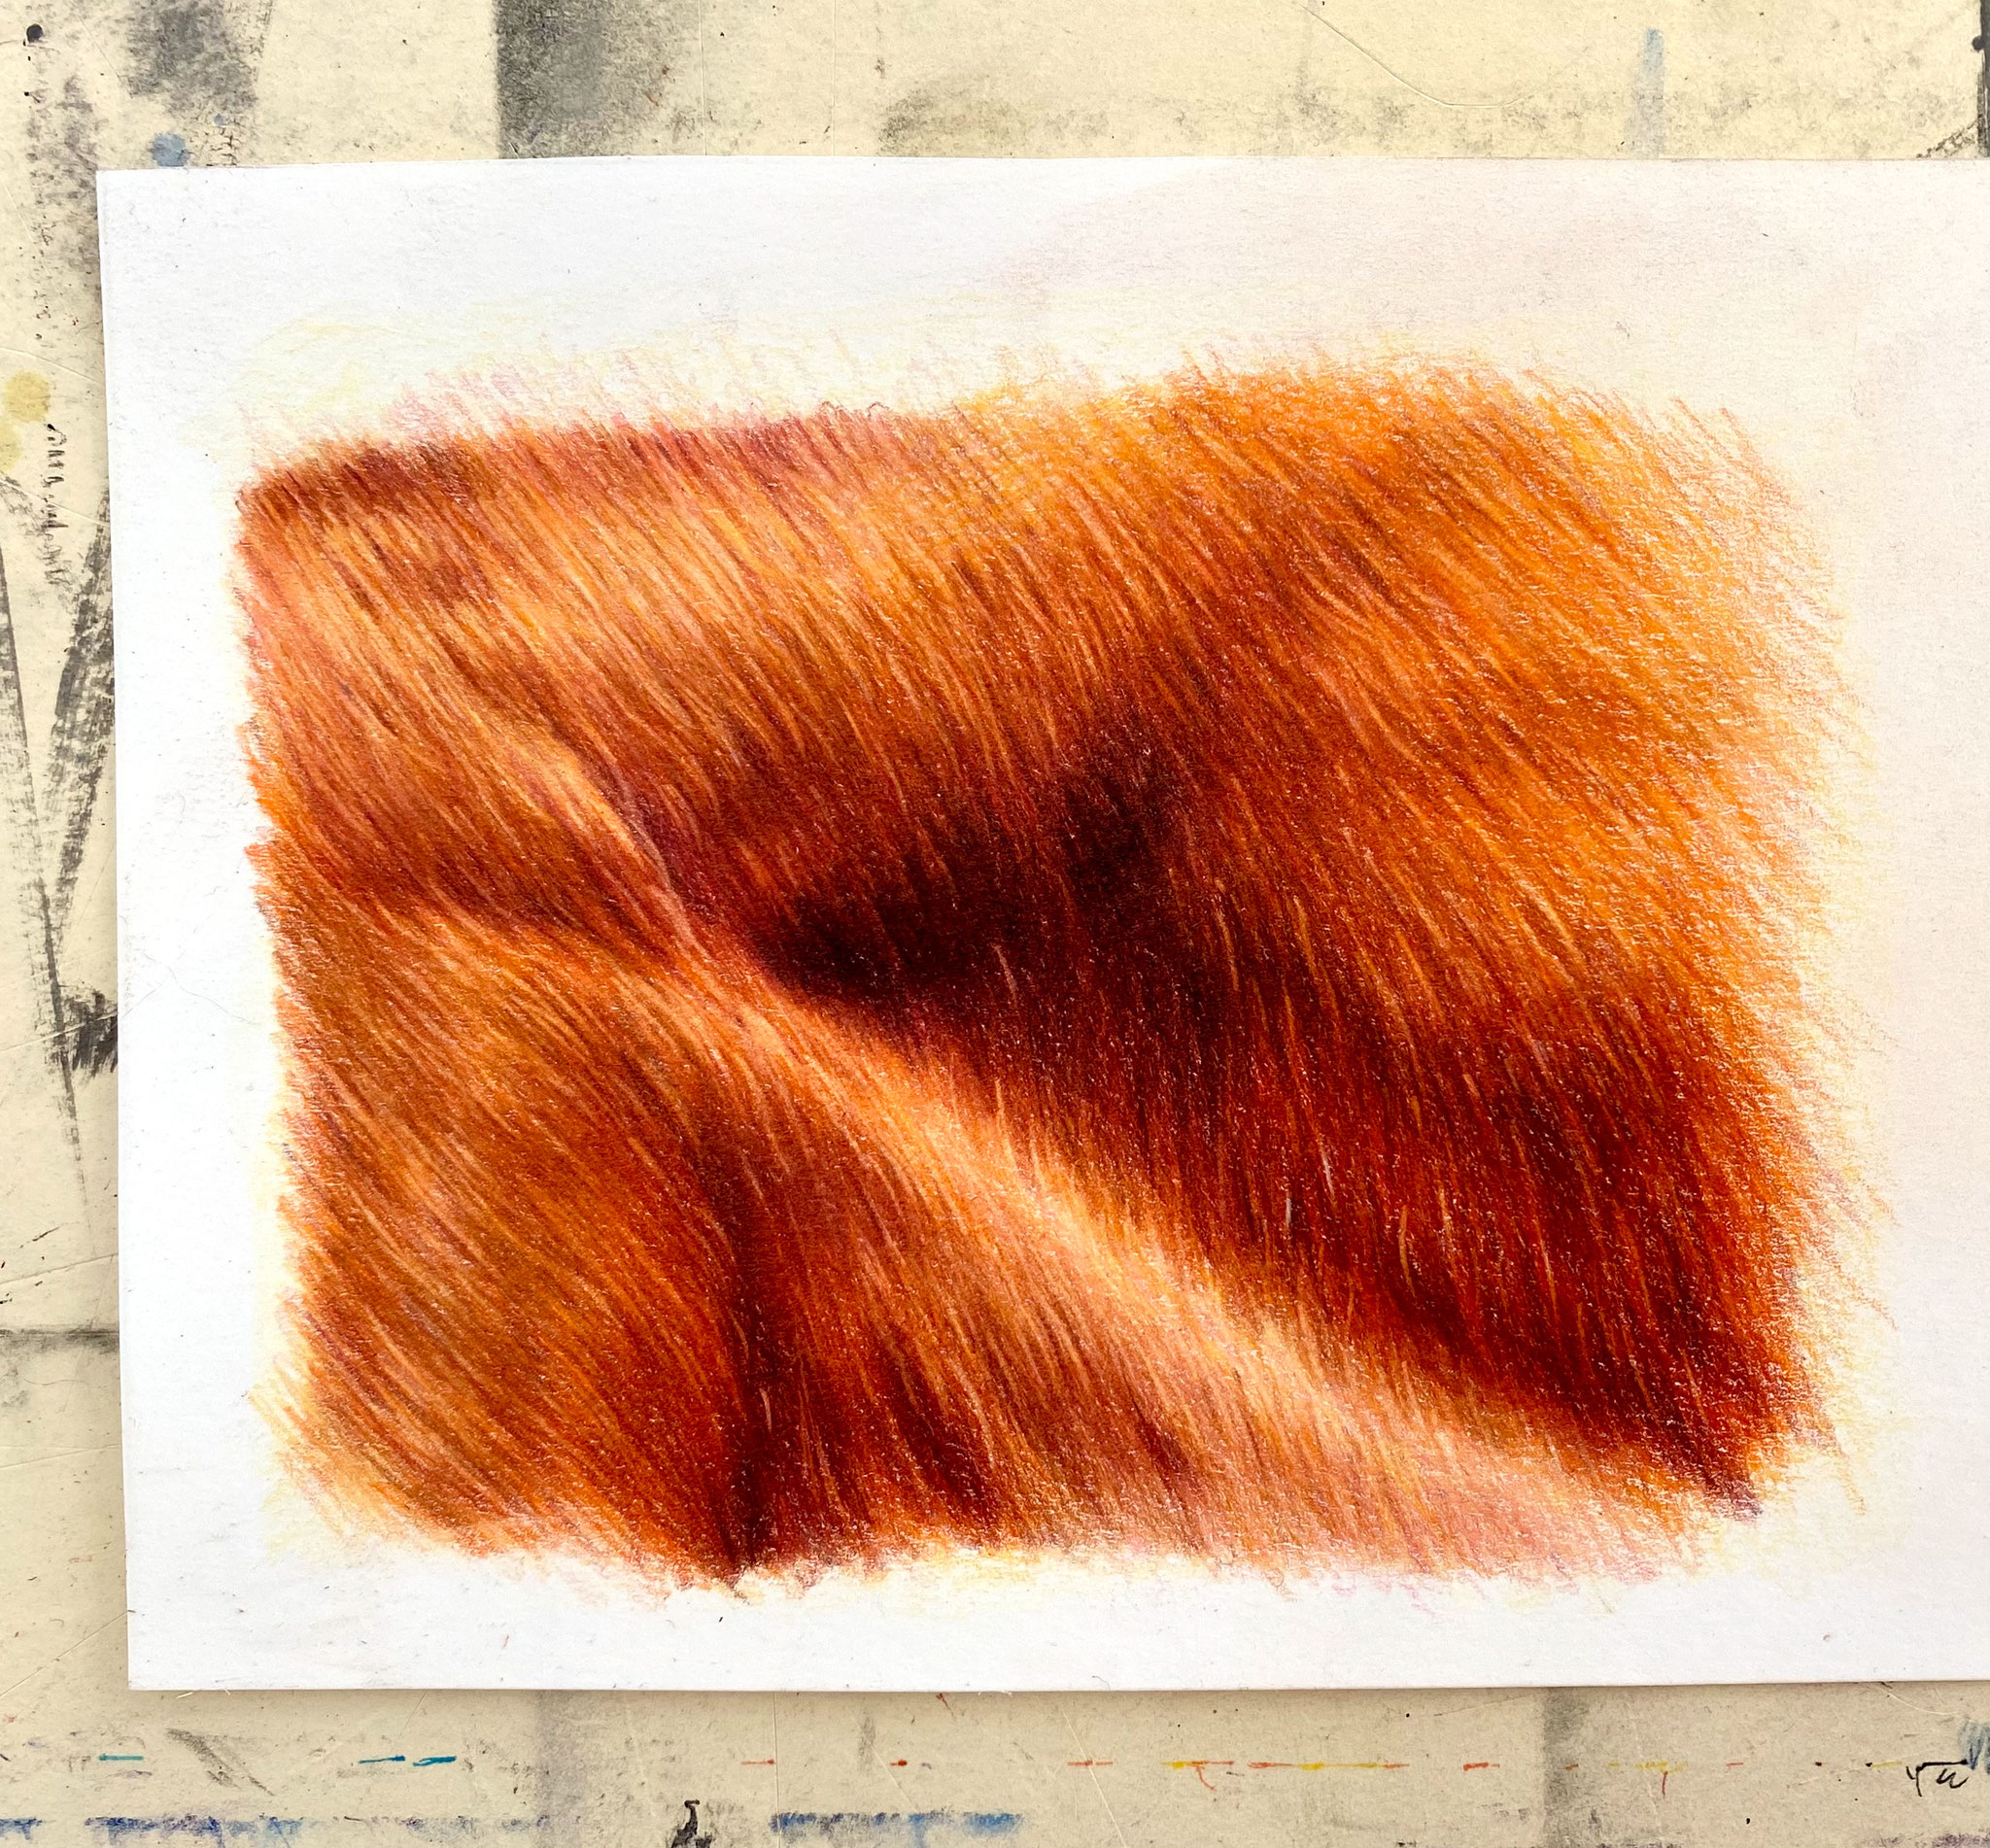 Chestnut horse fur, focus tutorial.